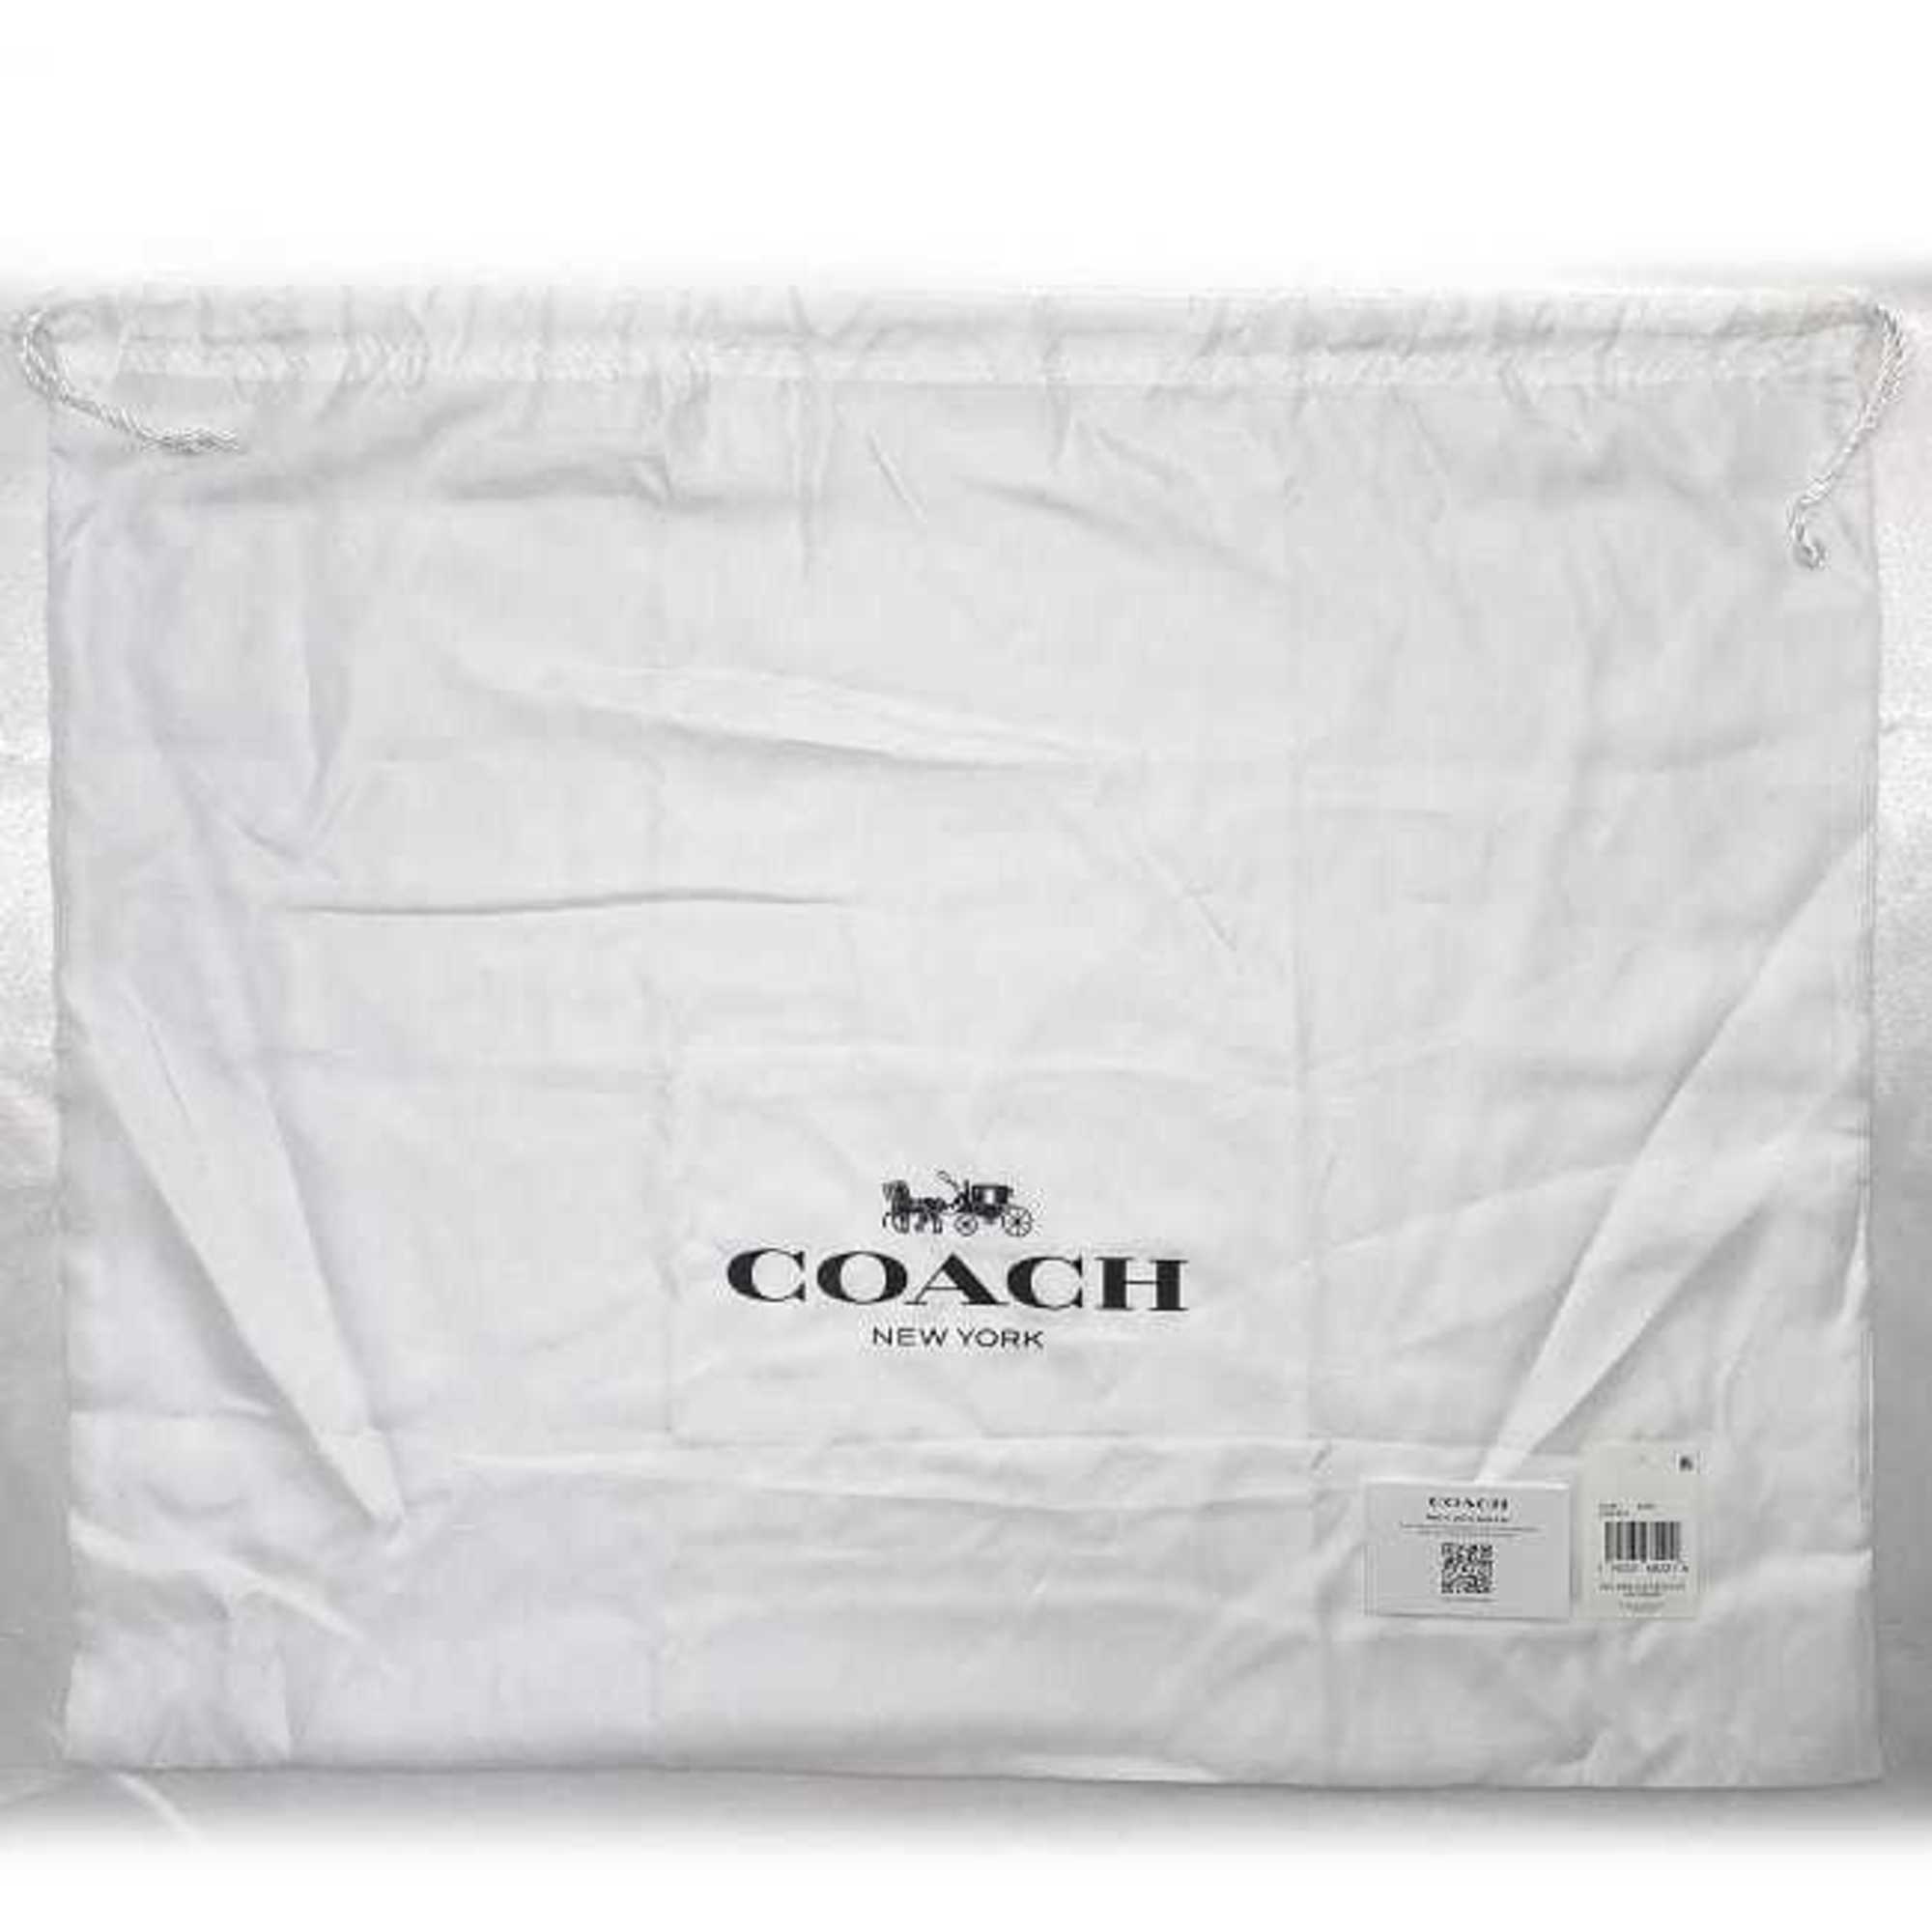 Coach Tote Bag Black Boutique Line CC395 Leather COACH C Charm Ladies